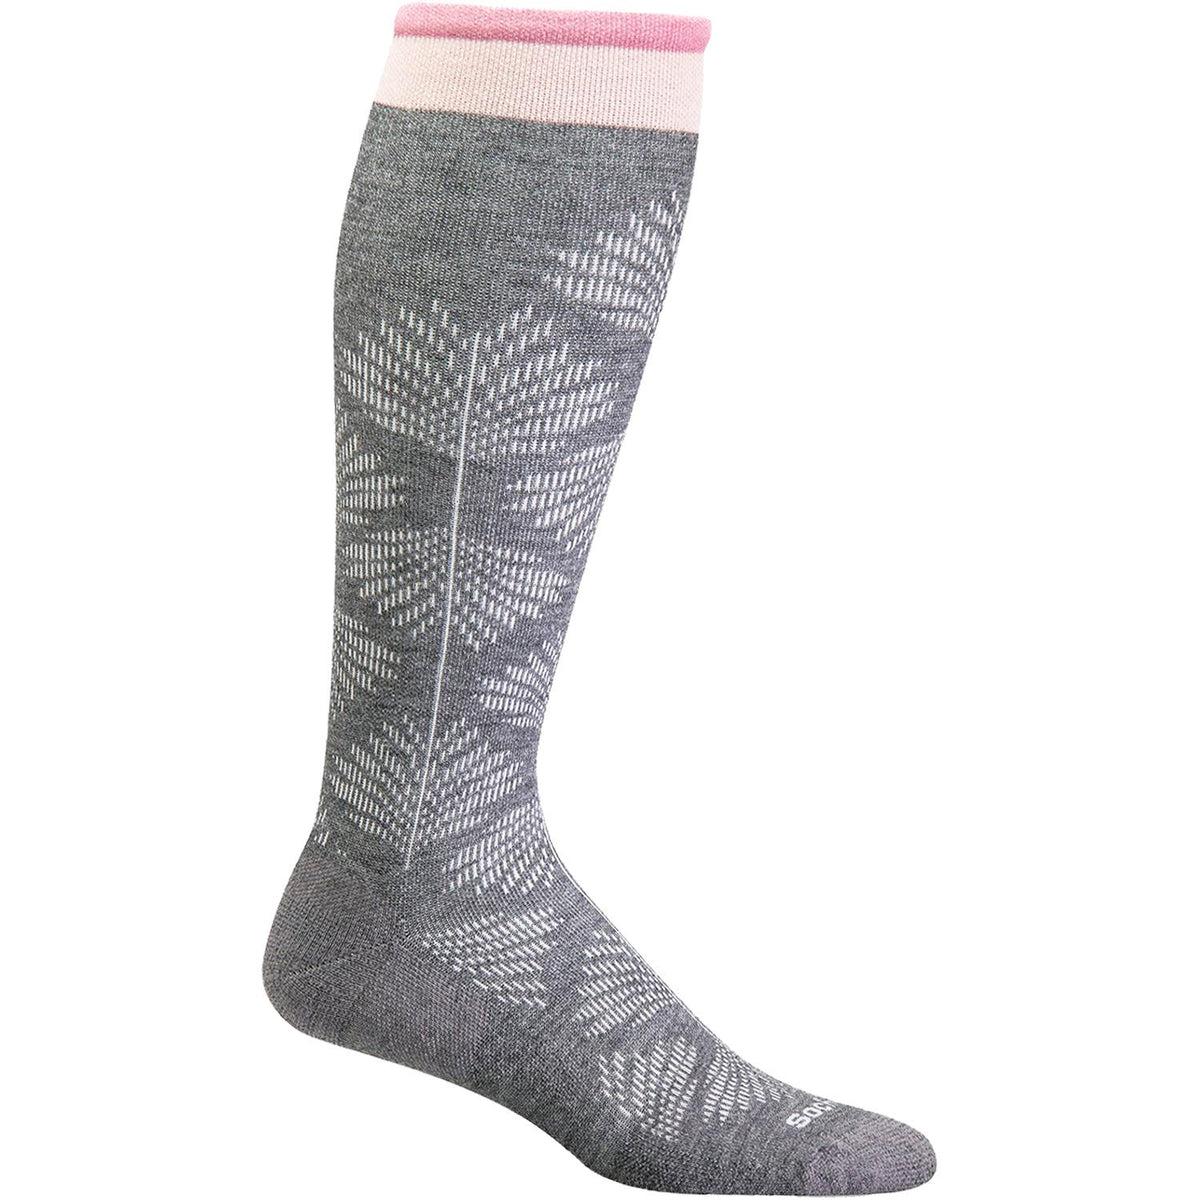 Women's Sockwell Full Floral Knee High Socks 15-20 mmHg Charcoal ...